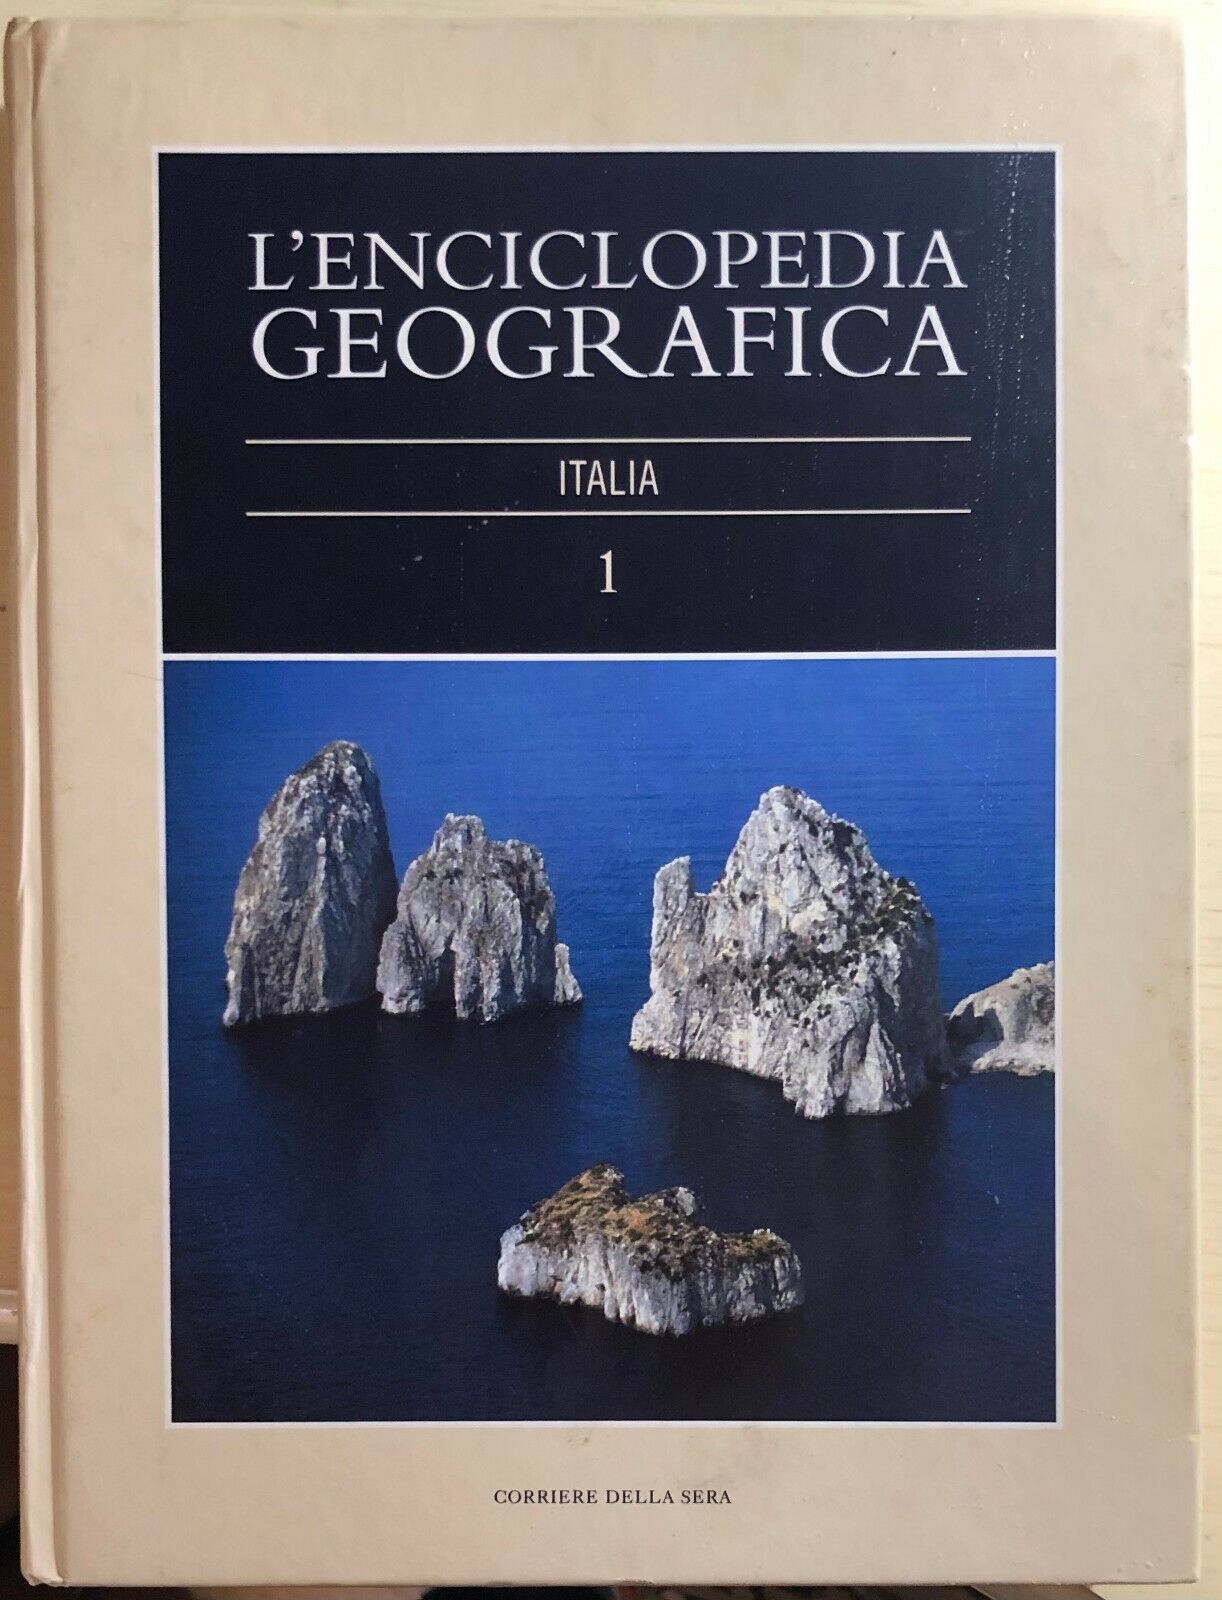 L'enciclopedia geografica 1, Italia di Aa.vv., 2004, Corriere Della Sera